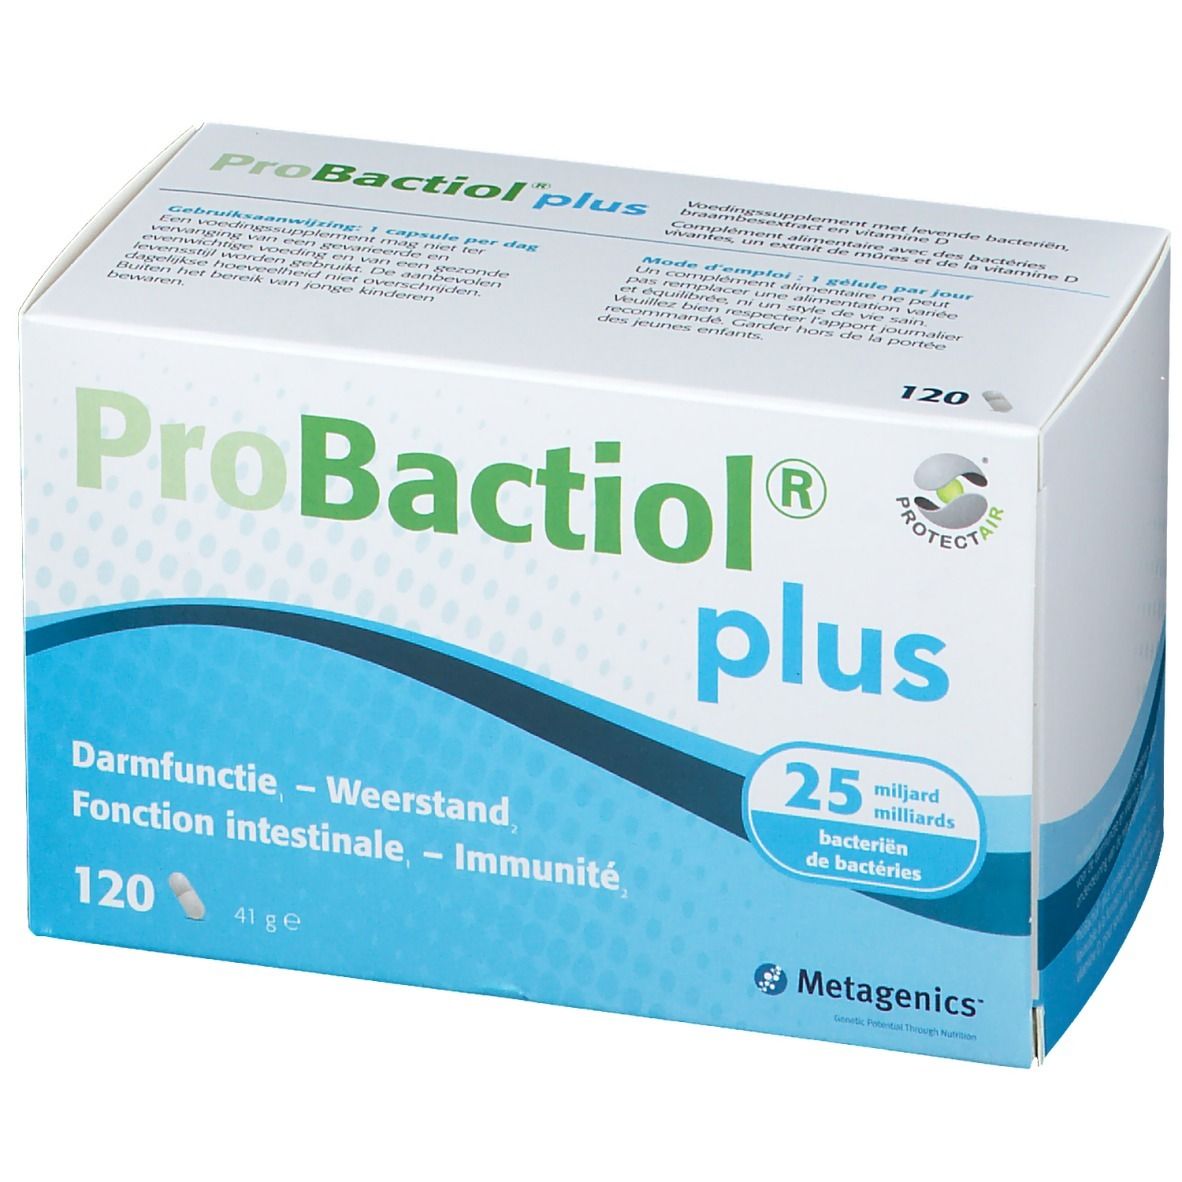 Probactiol® plus 120 capsule